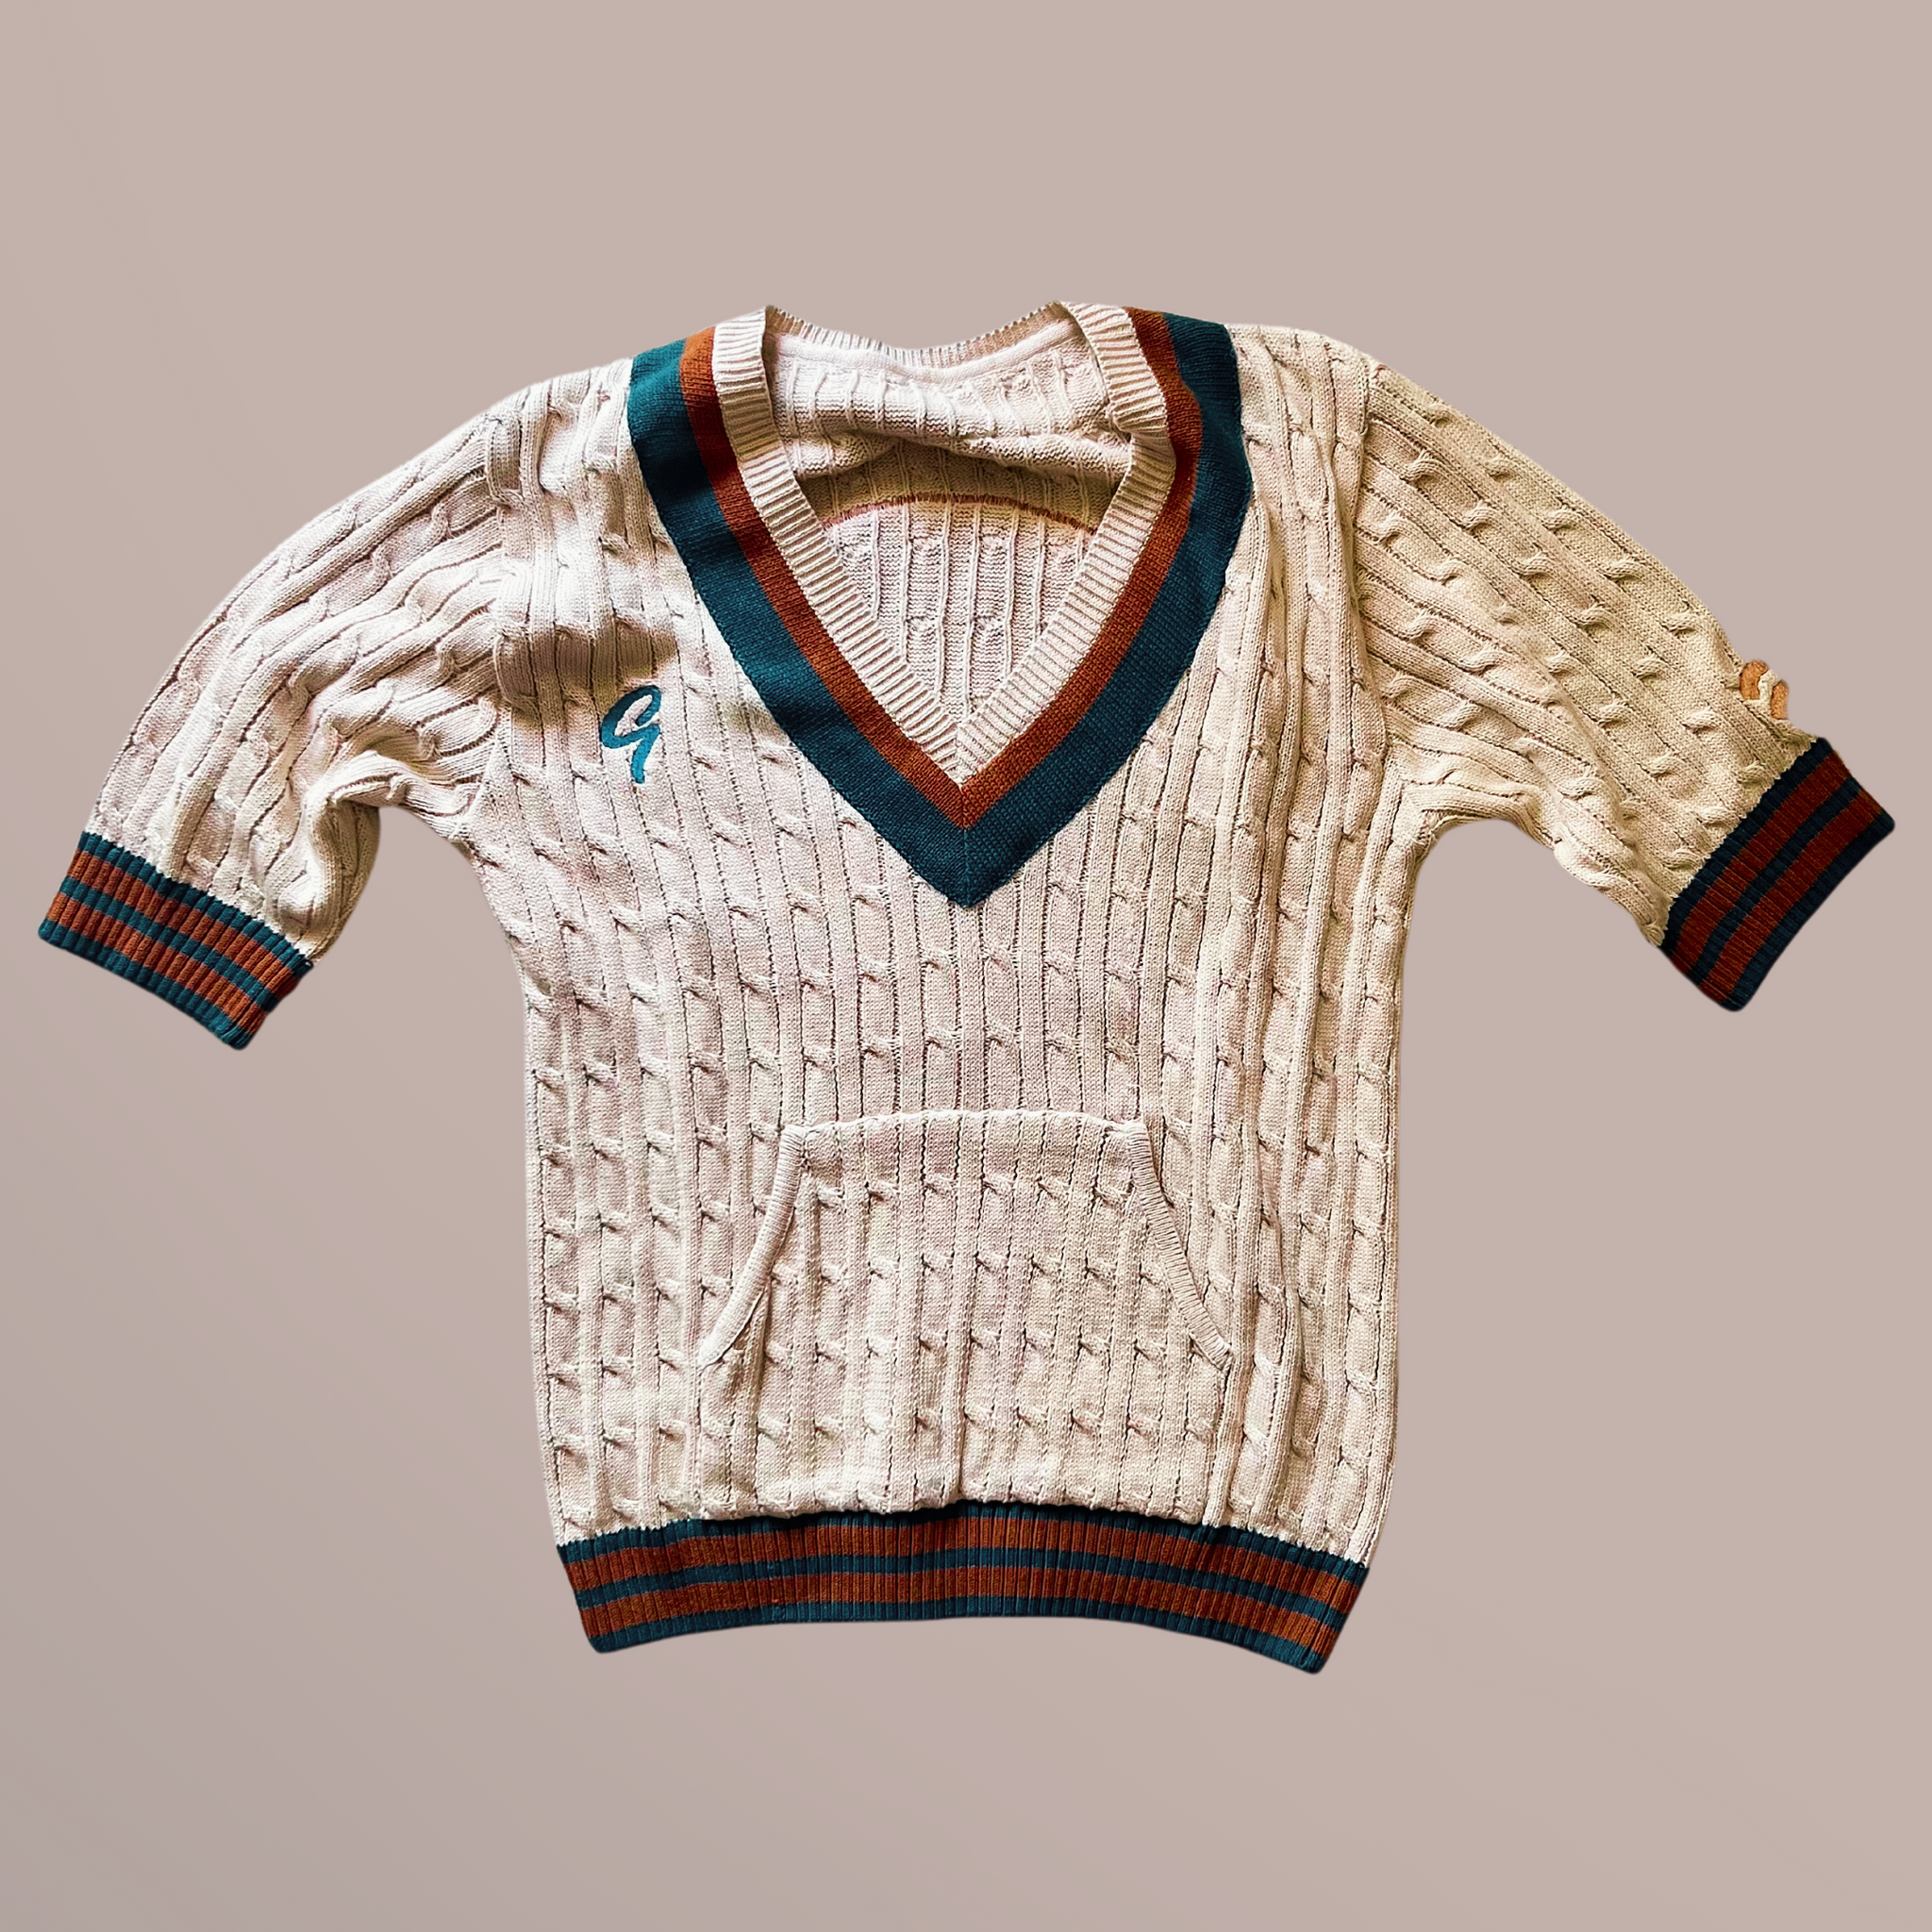 9 Legends - Vintage Culture Cricket Cable Knit Shirt